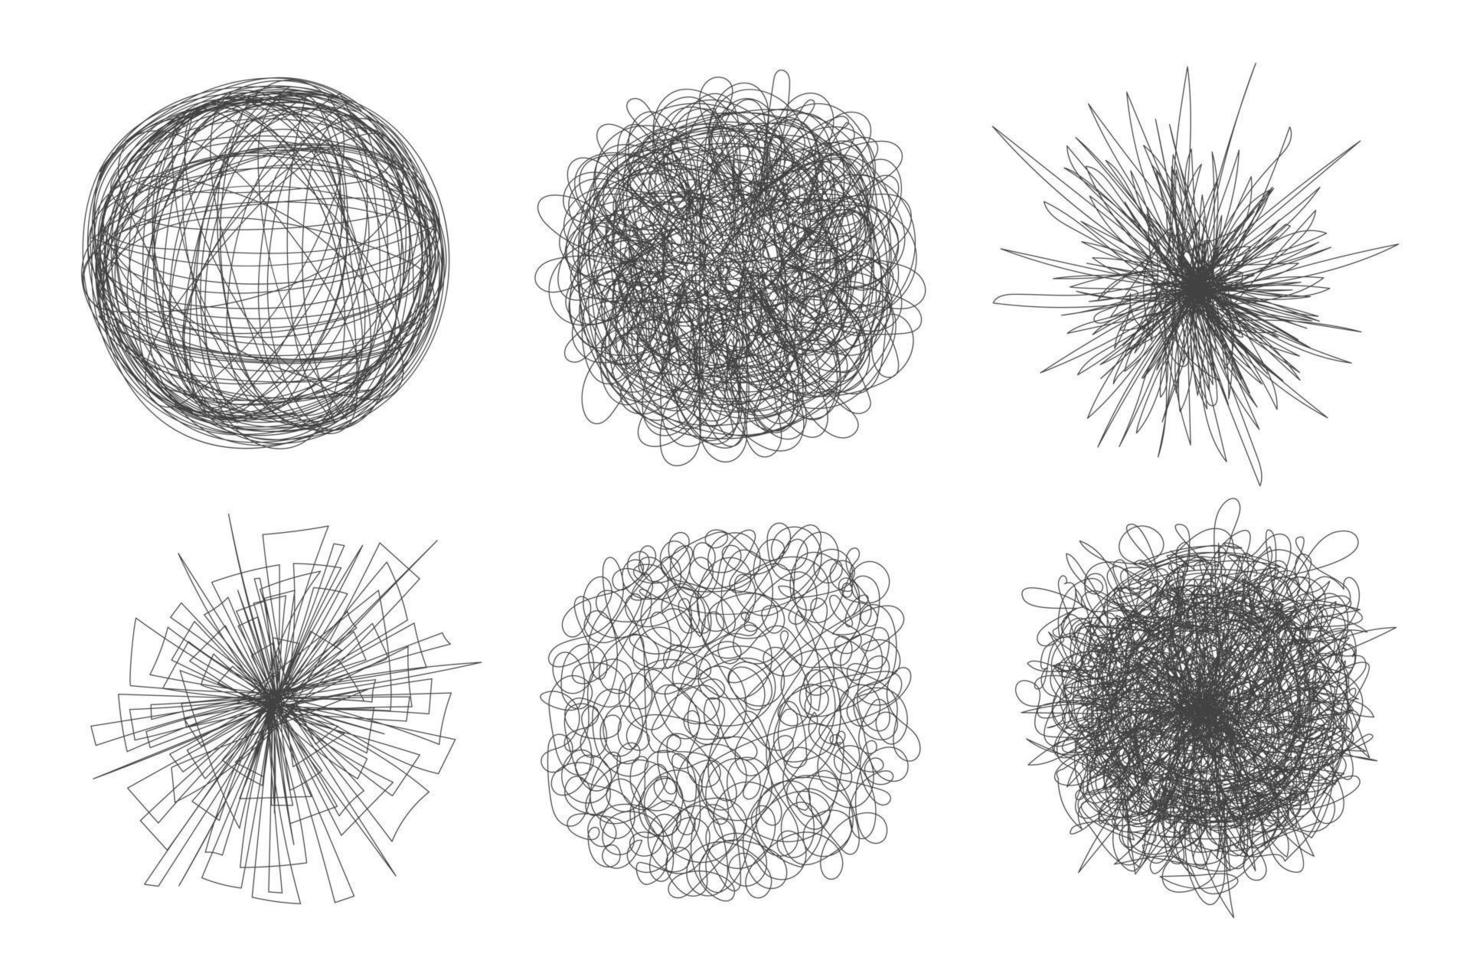 caos enredado abstracto dibujado a mano desordenado juego de ilustración de vector de bola de garabato.